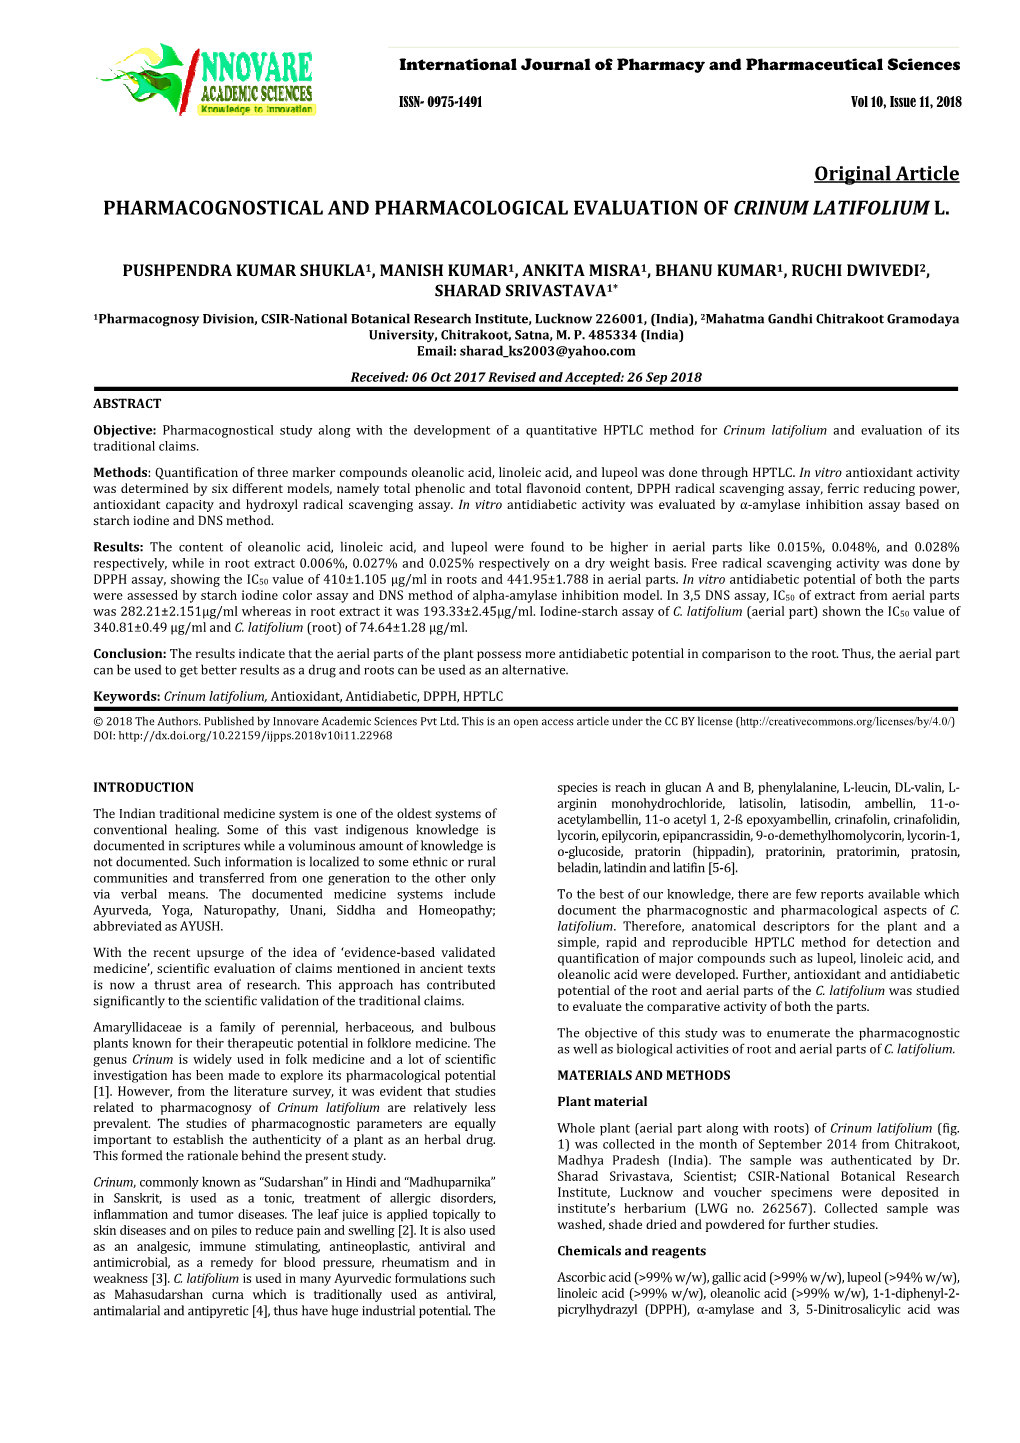 Original Article PHARMACOGNOSTICAL and PHARMACOLOGICAL EVALUATION of CRINUM LATIFOLIUM L